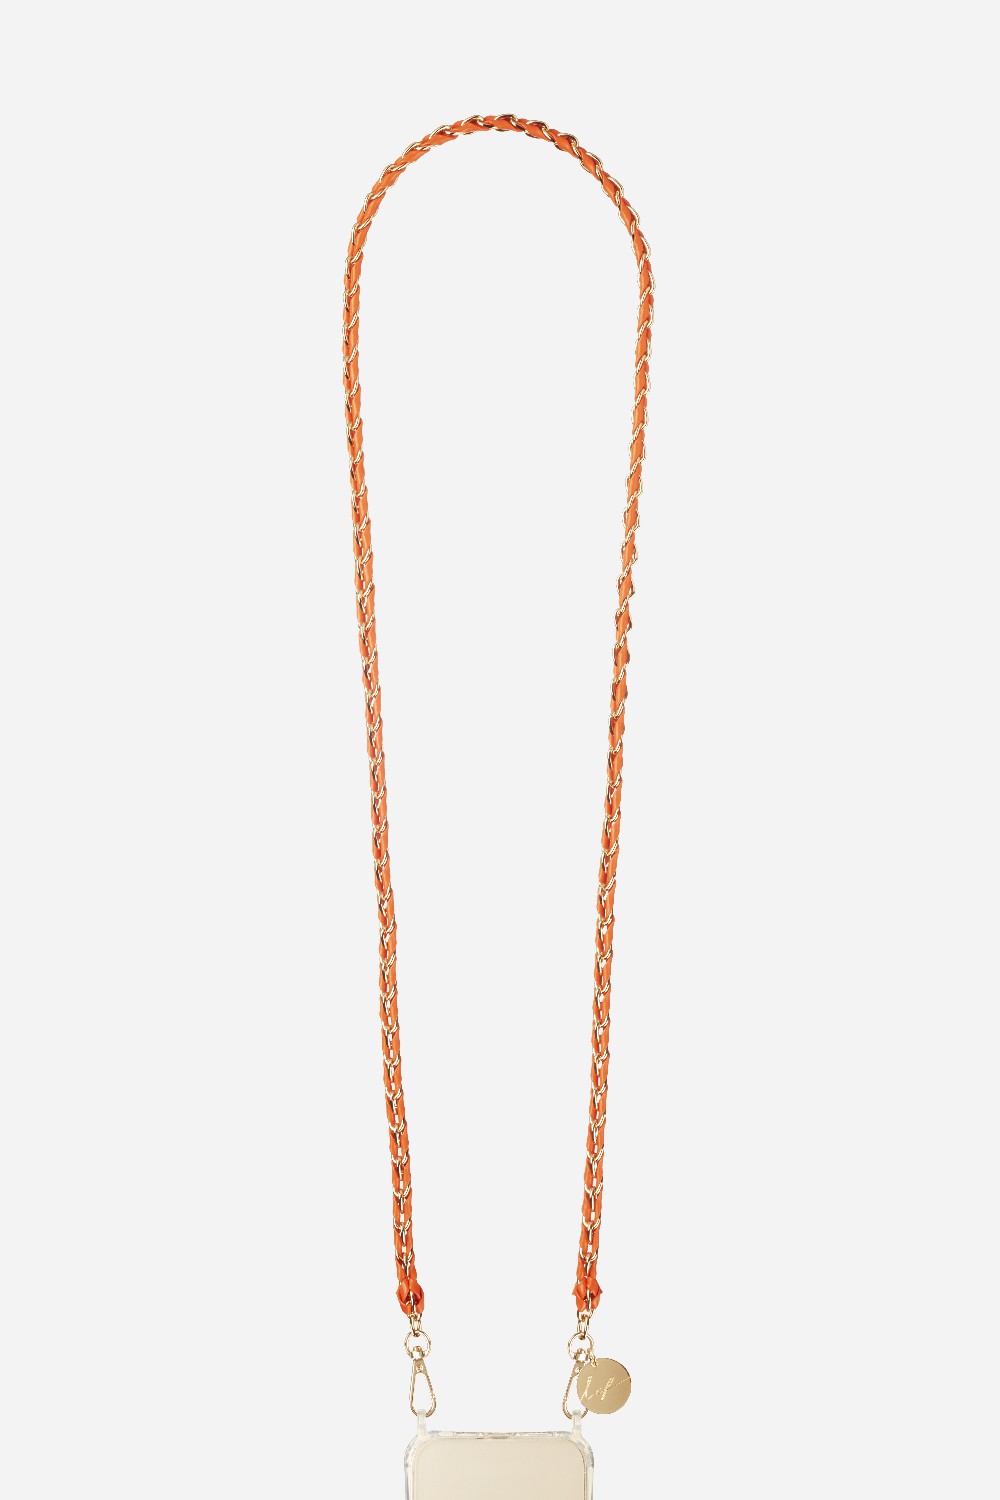 Chaine Longue Lou Orange 120 cm